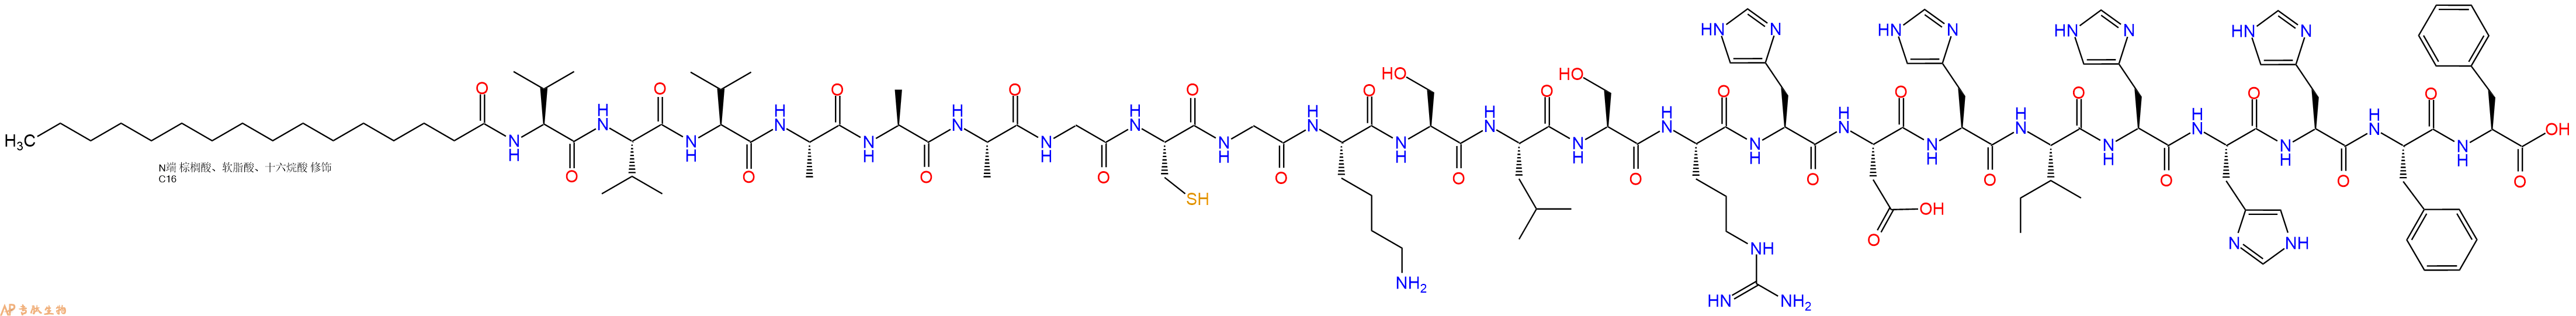 专肽生物产品棕榈酸-VVVAAAGCGKSLSRHDHIHHHFF